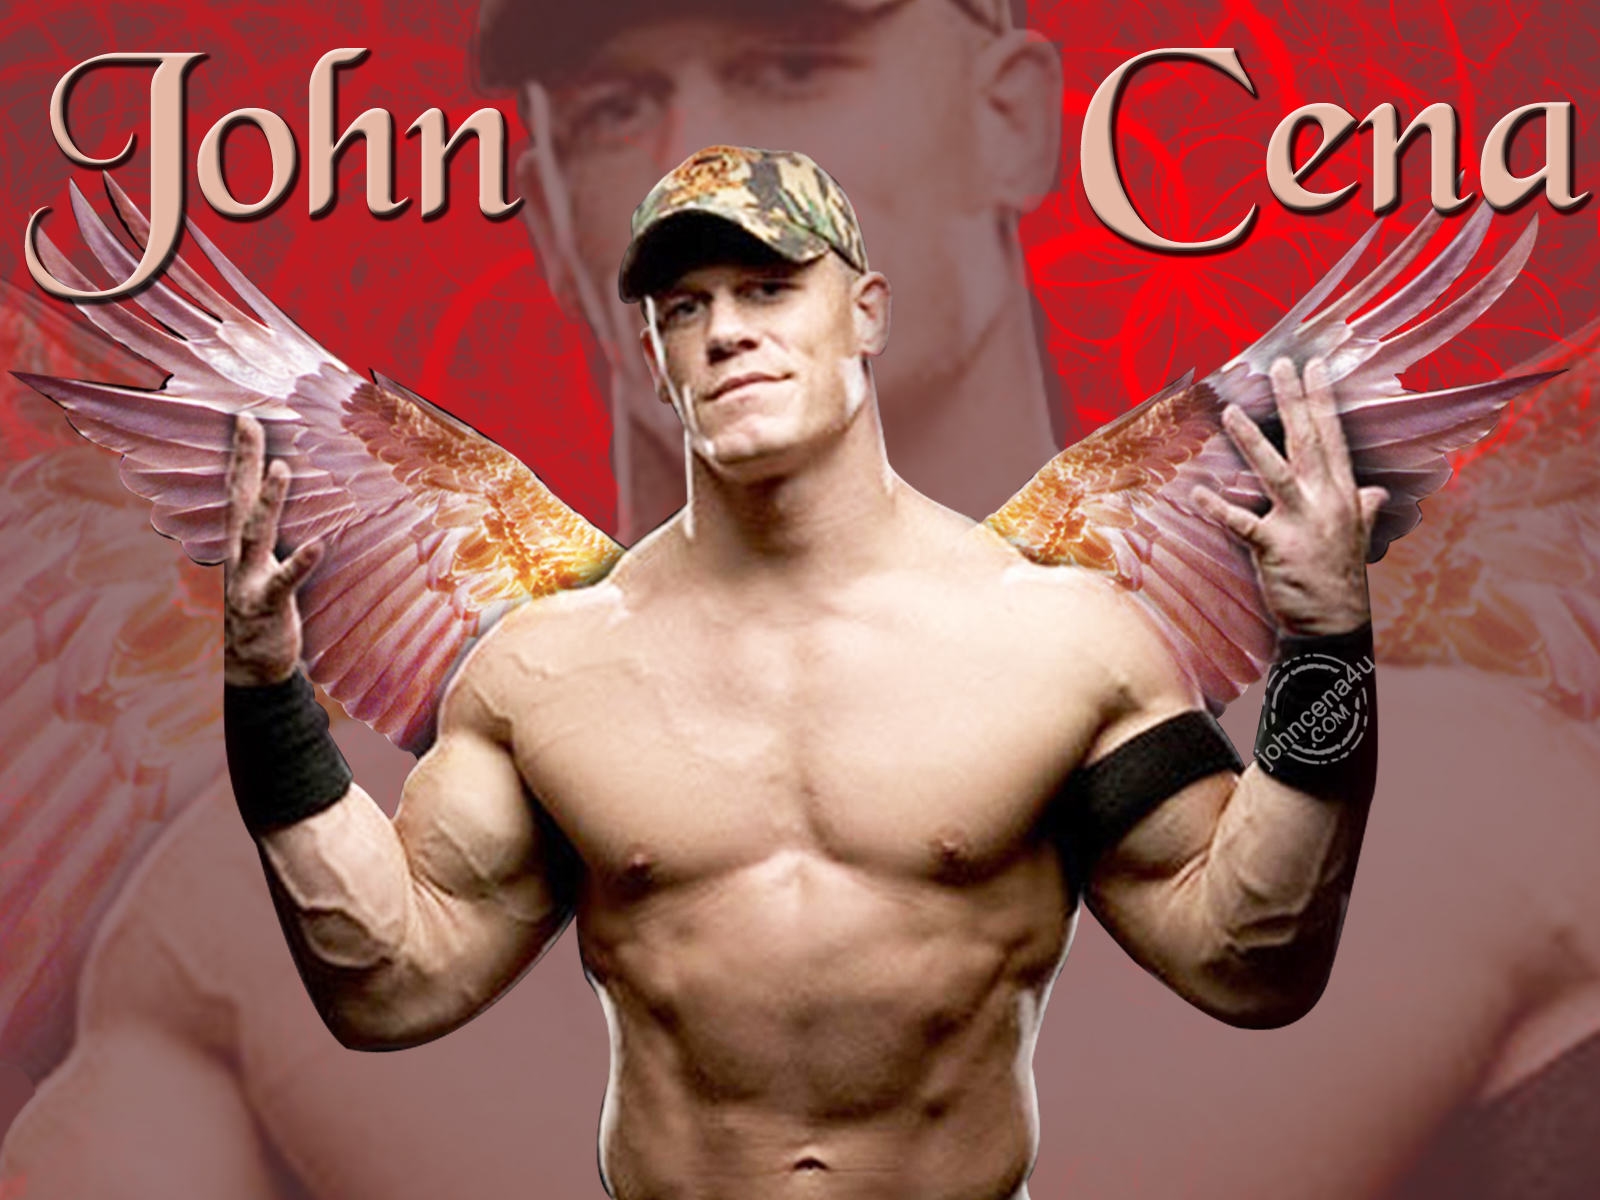 65+] Free John Cena Wallpaper - WallpaperSafari